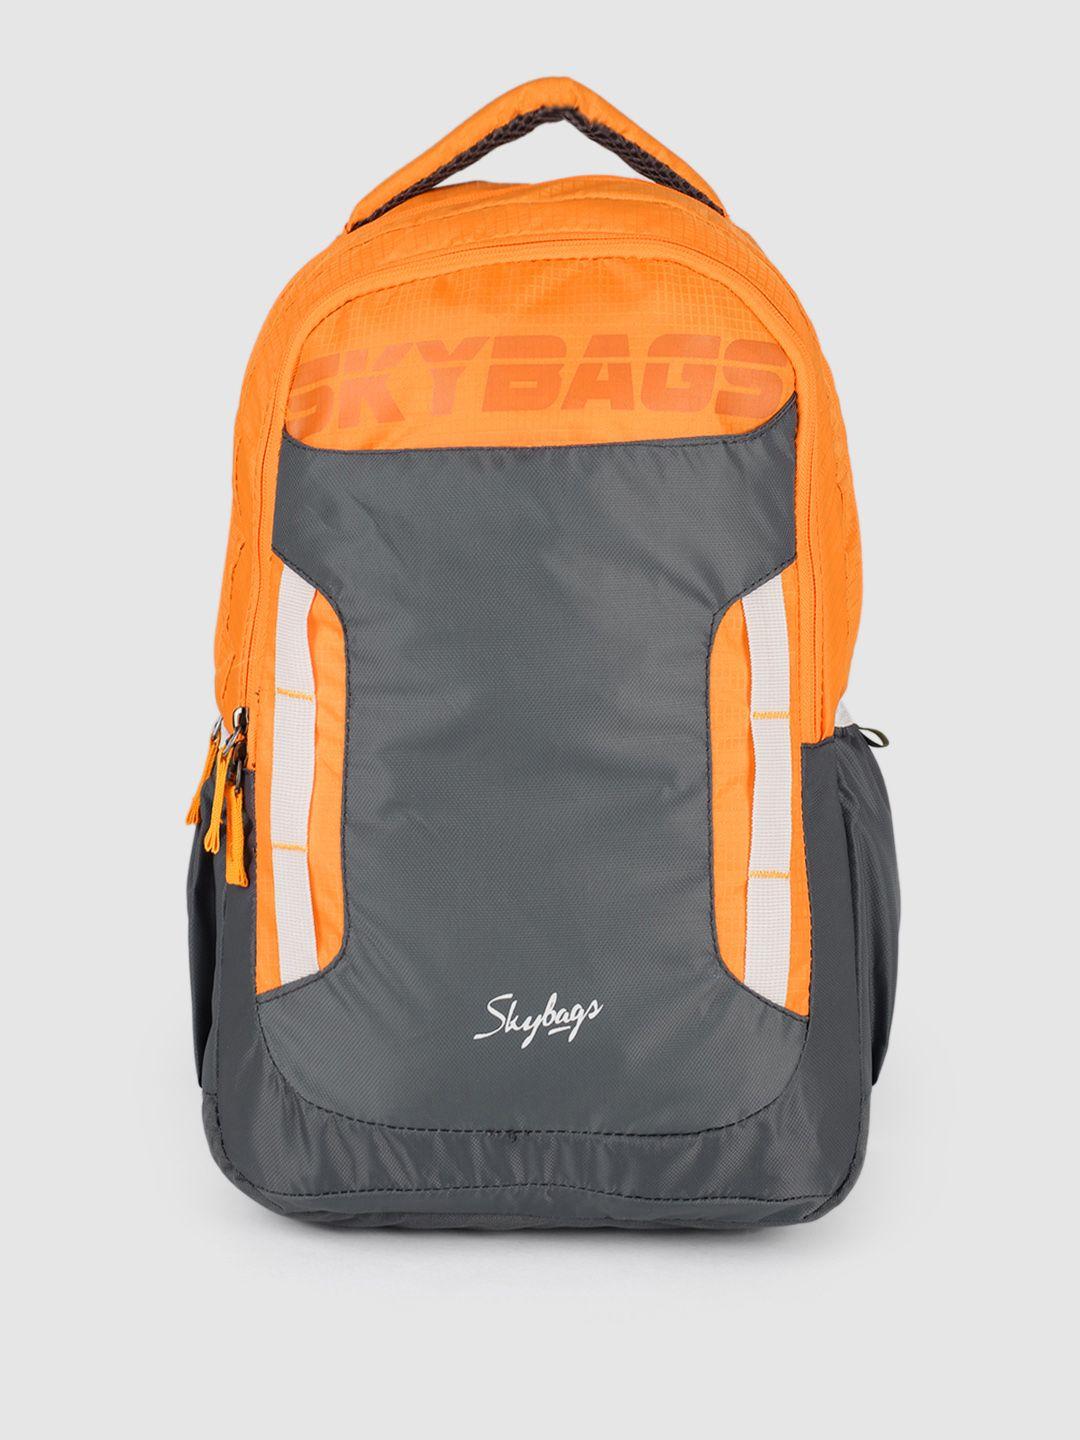 skybags unisex orange & grey voxel backpack